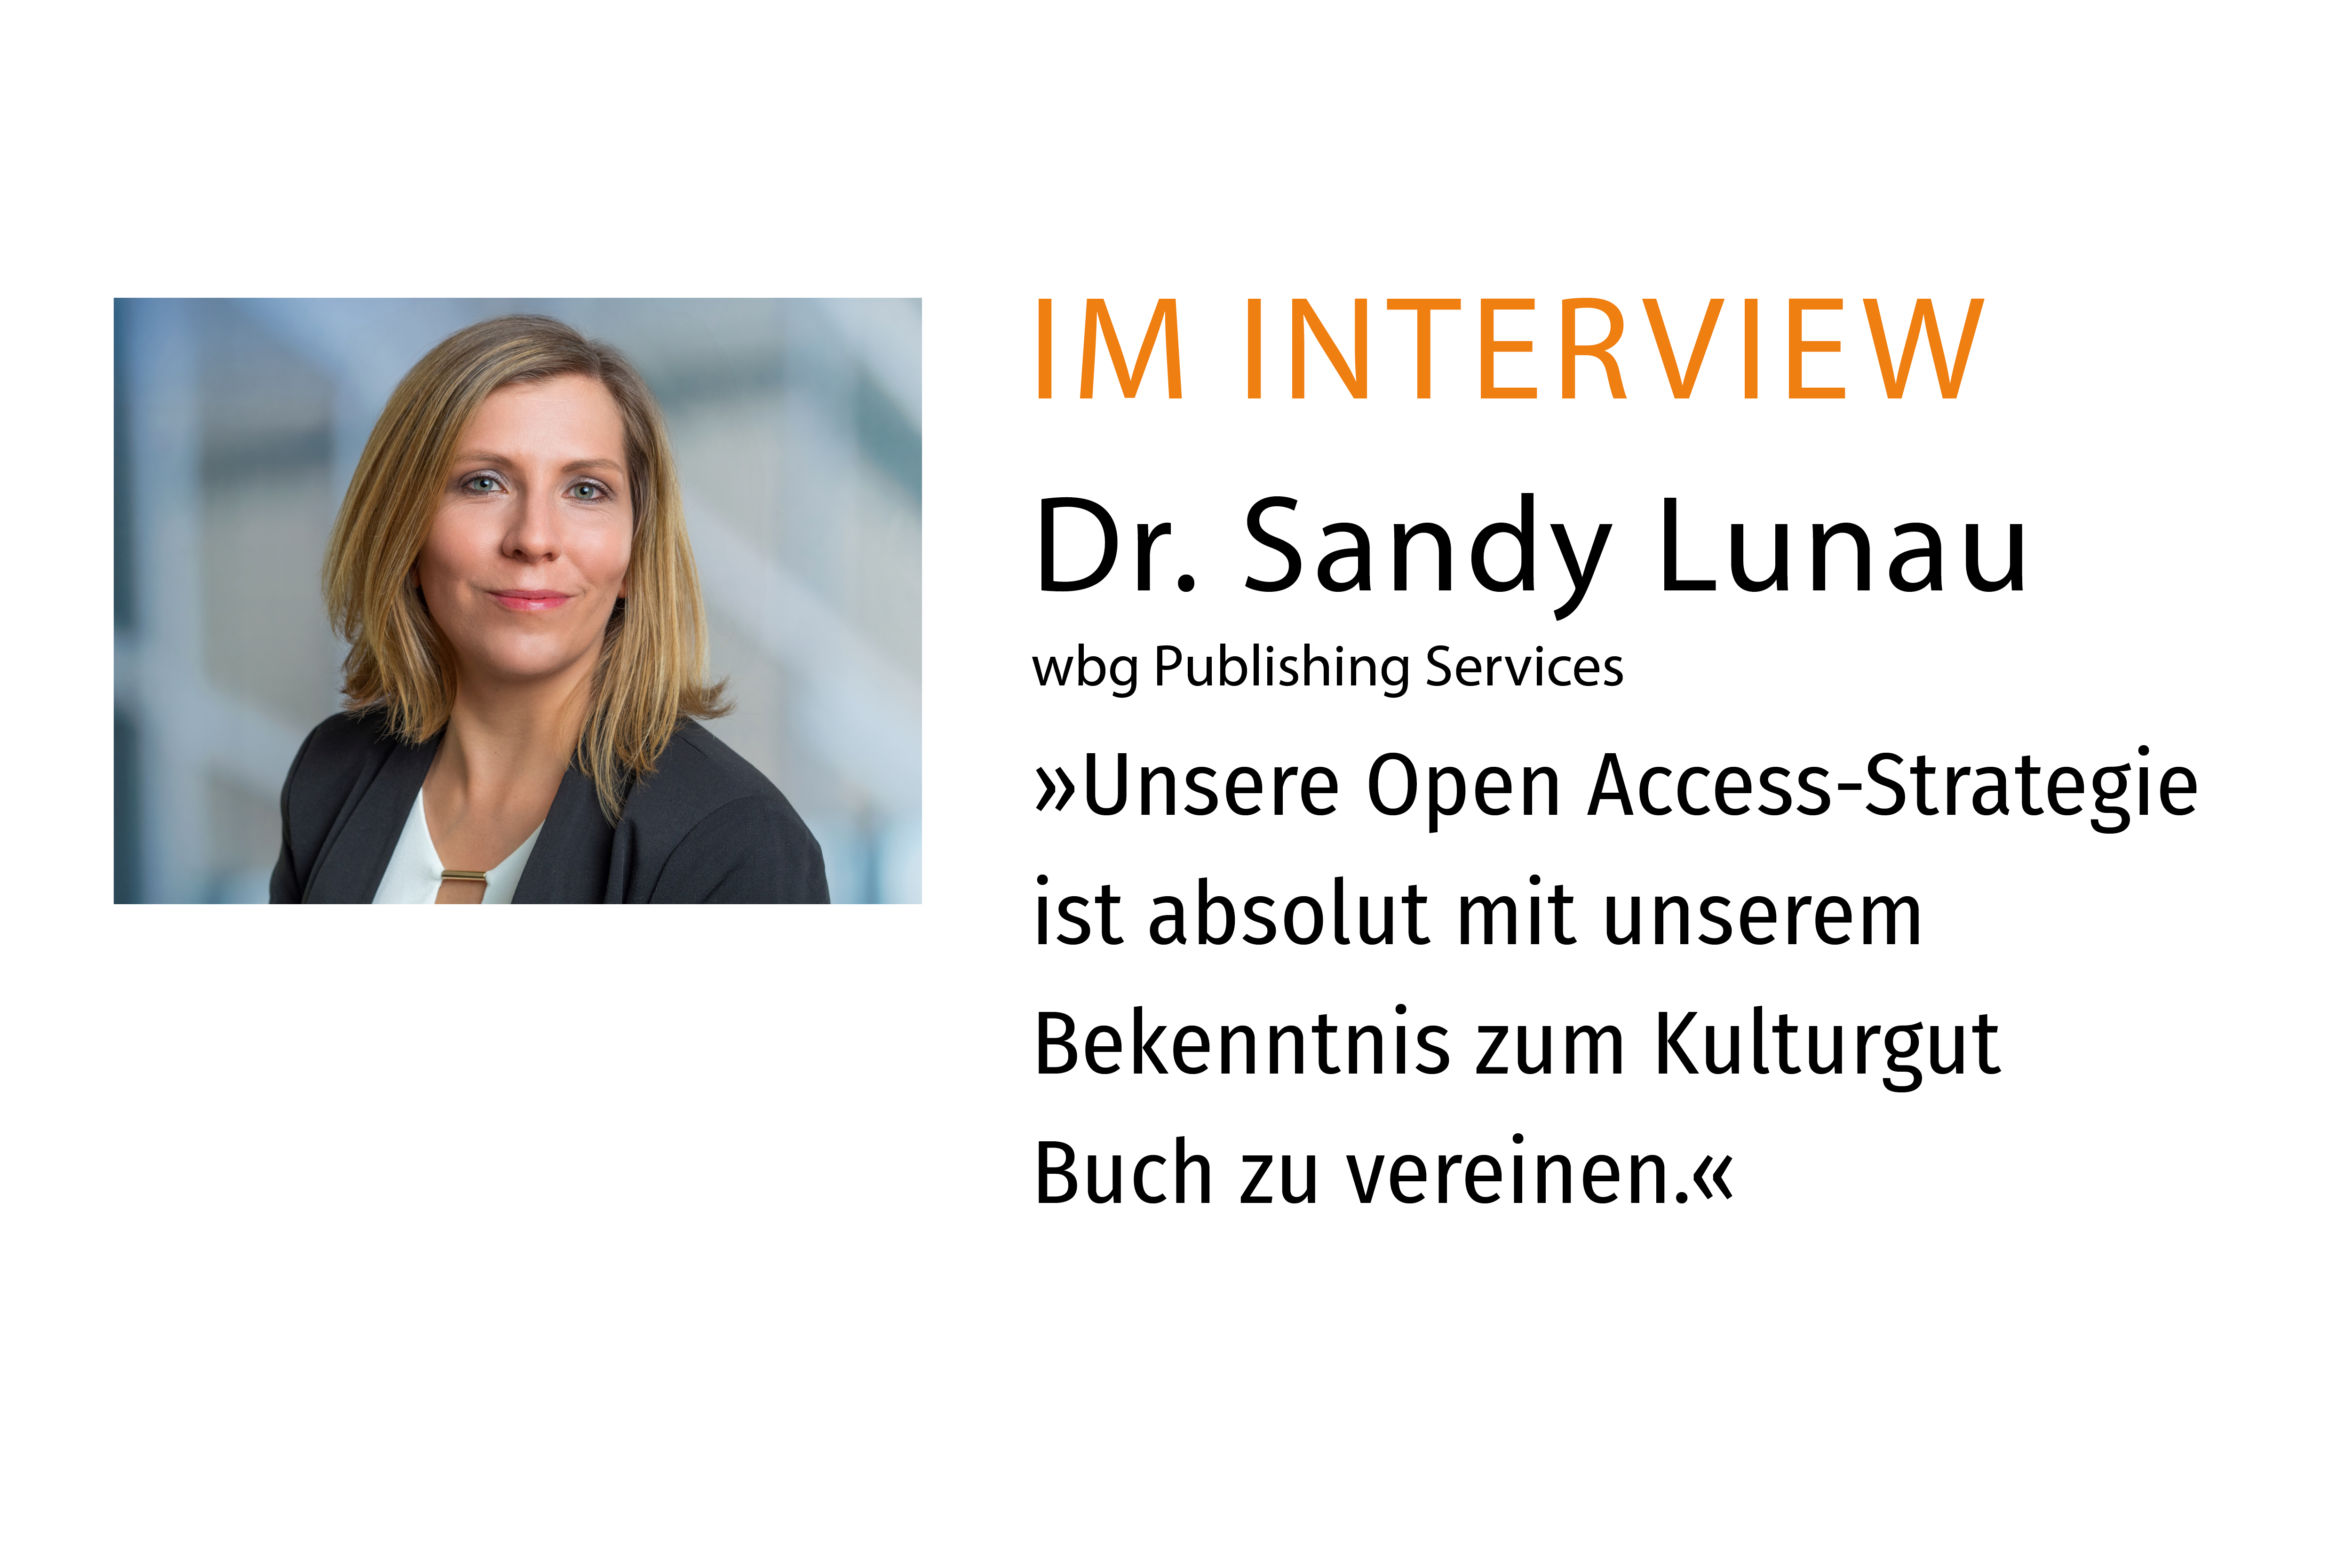 Interview mit Dr. Sandy Lunau